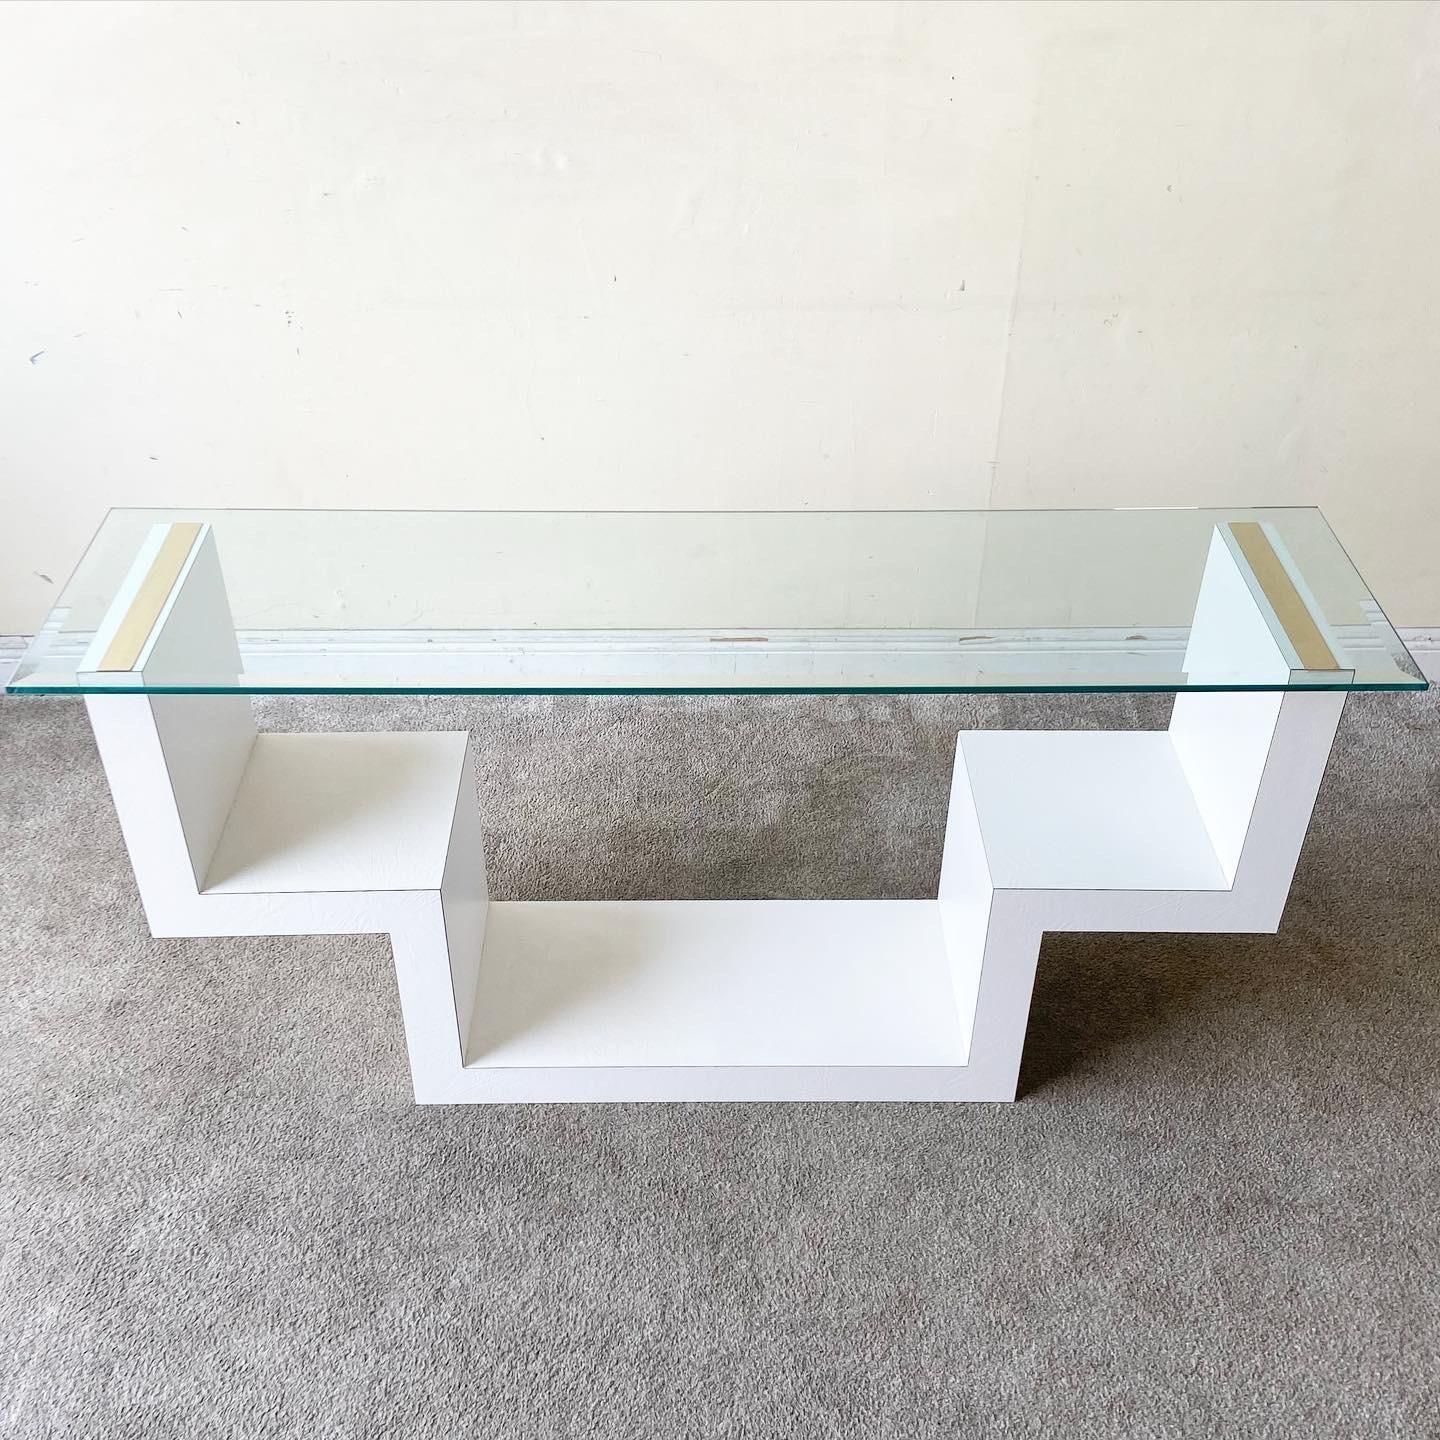 Erstaunlicher postmoderner Konsolentisch mit abgeschrägter Glasplatte. Die Tische haben ein weißes Kunstlederlaminat mit goldenen Streifen auf der Oberseite der Tischplatte.